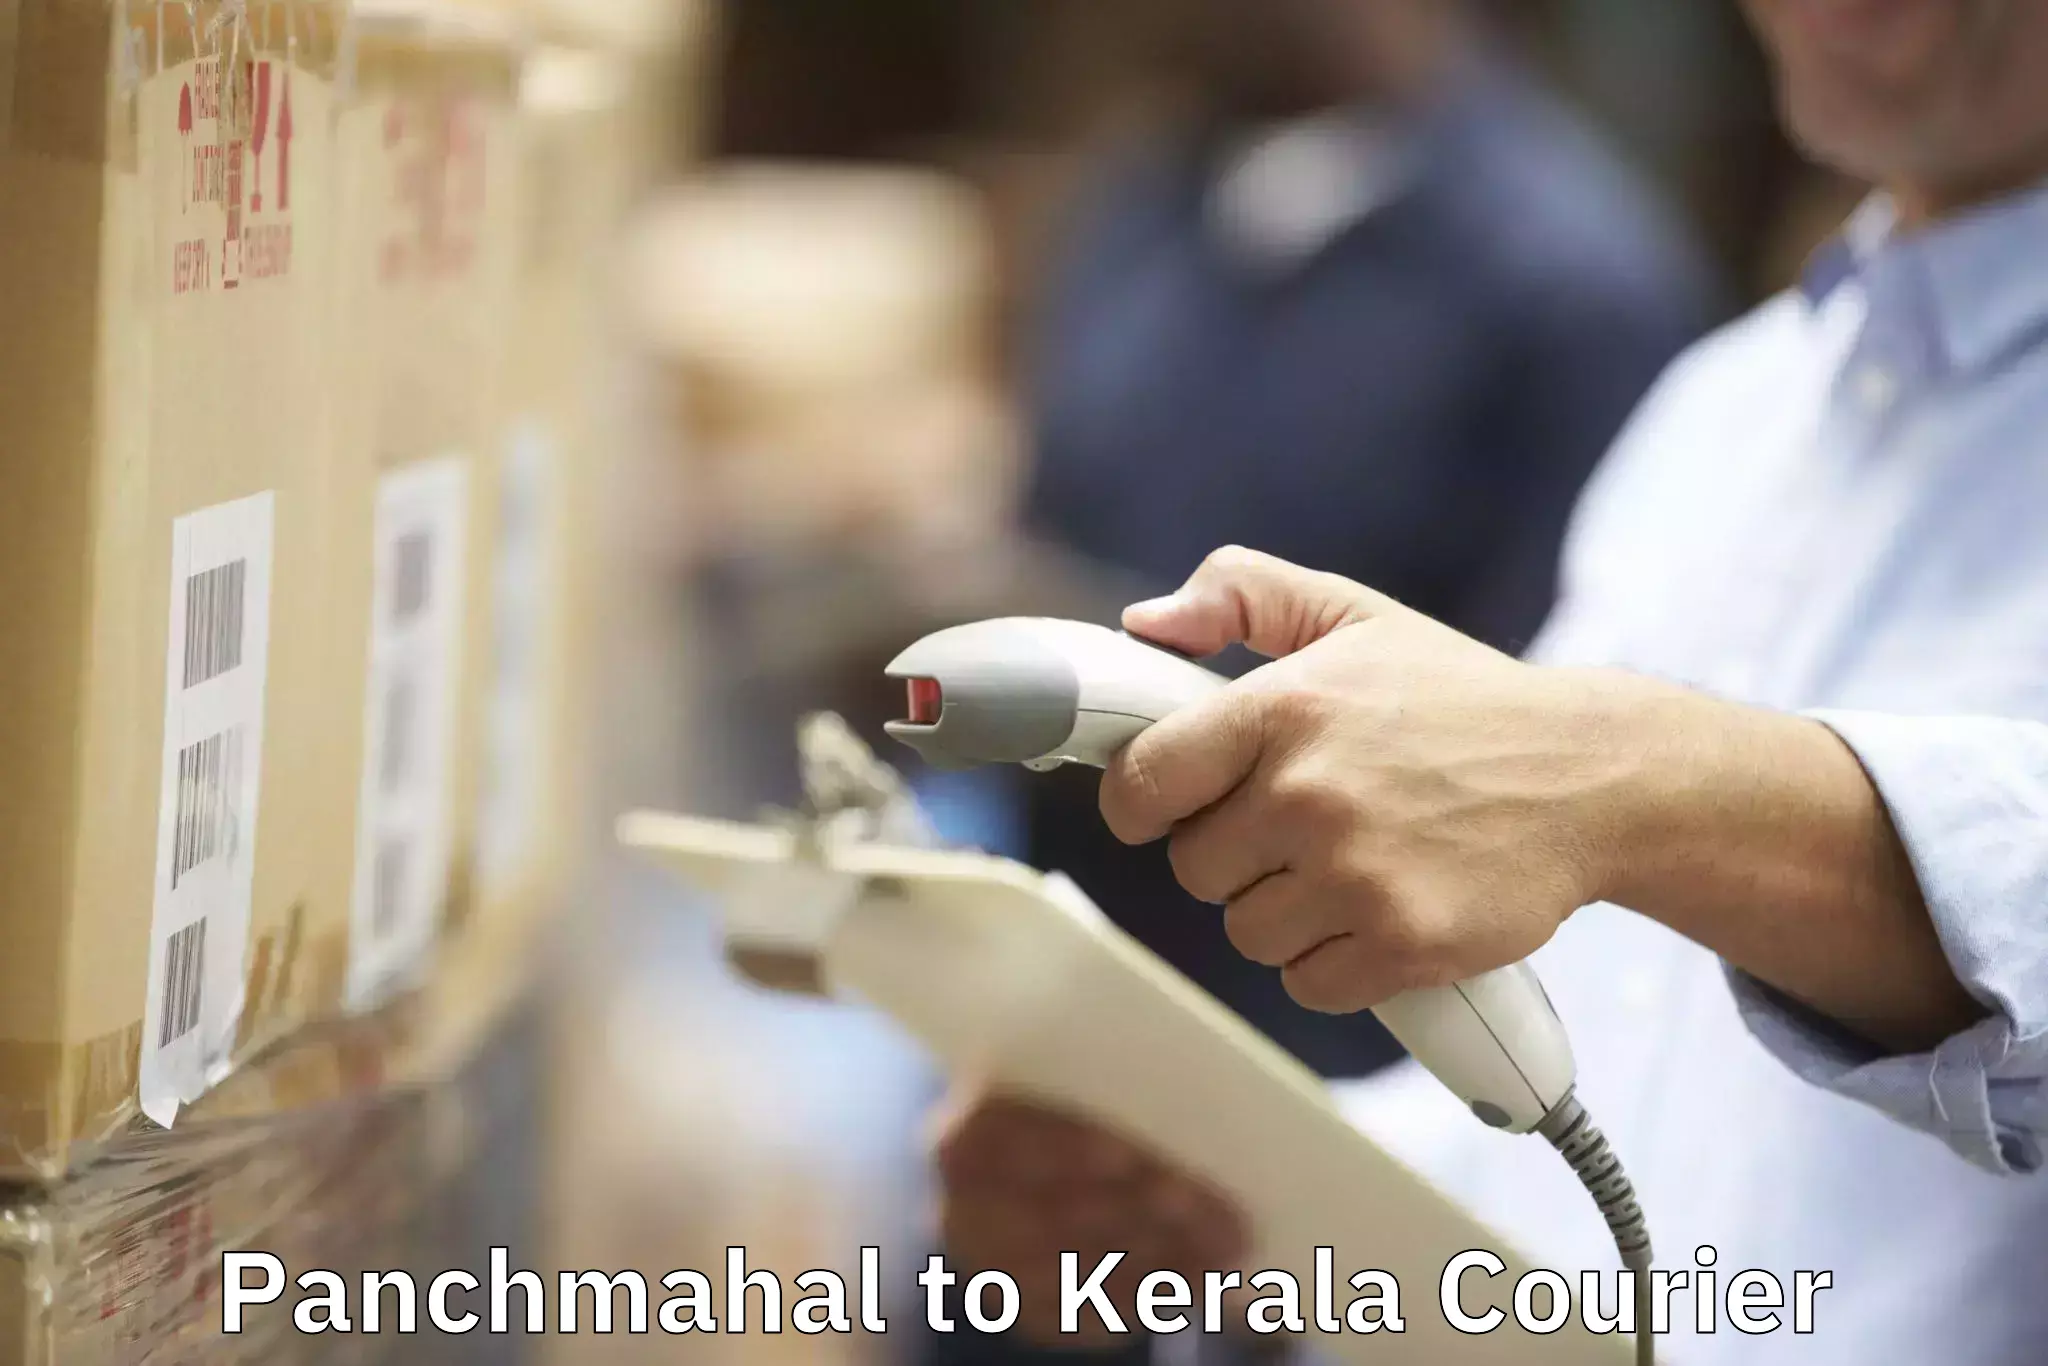 Quality moving company Panchmahal to Irinjalakuda